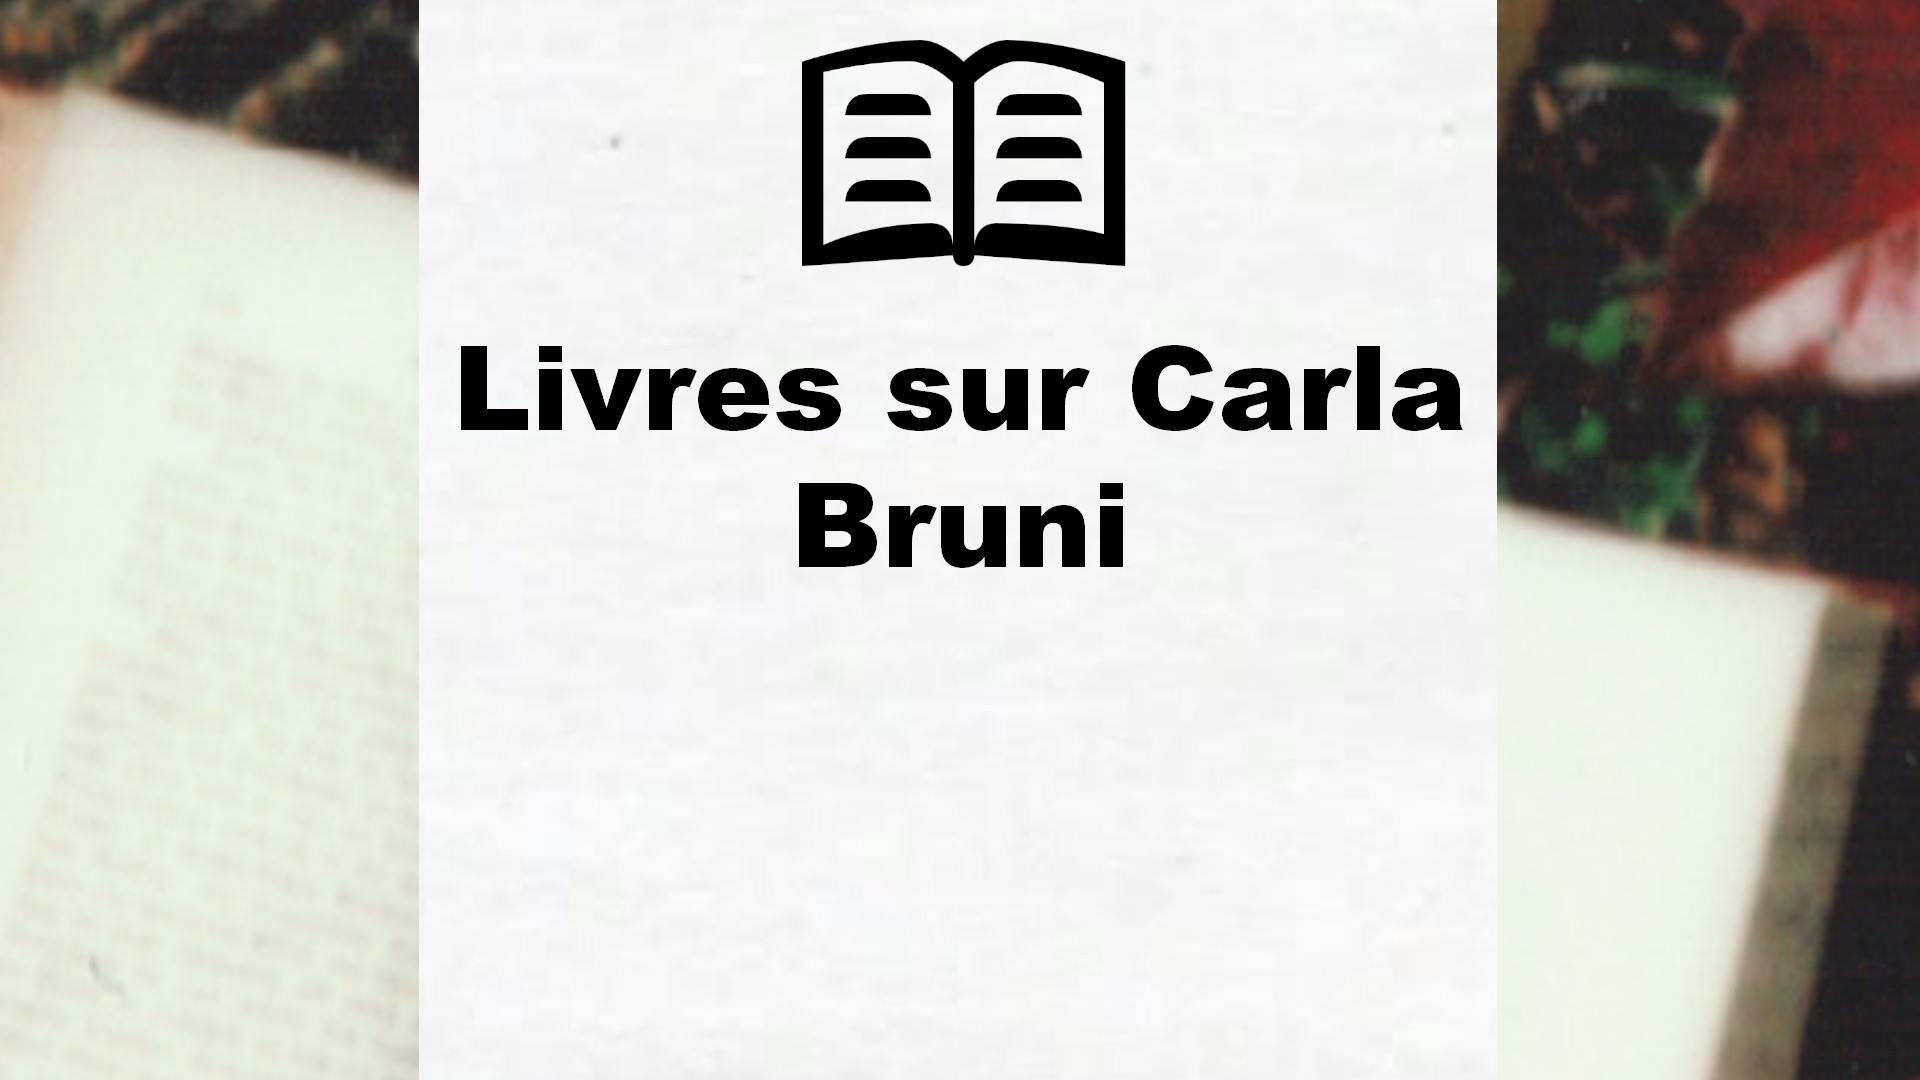 Livres sur Carla Bruni